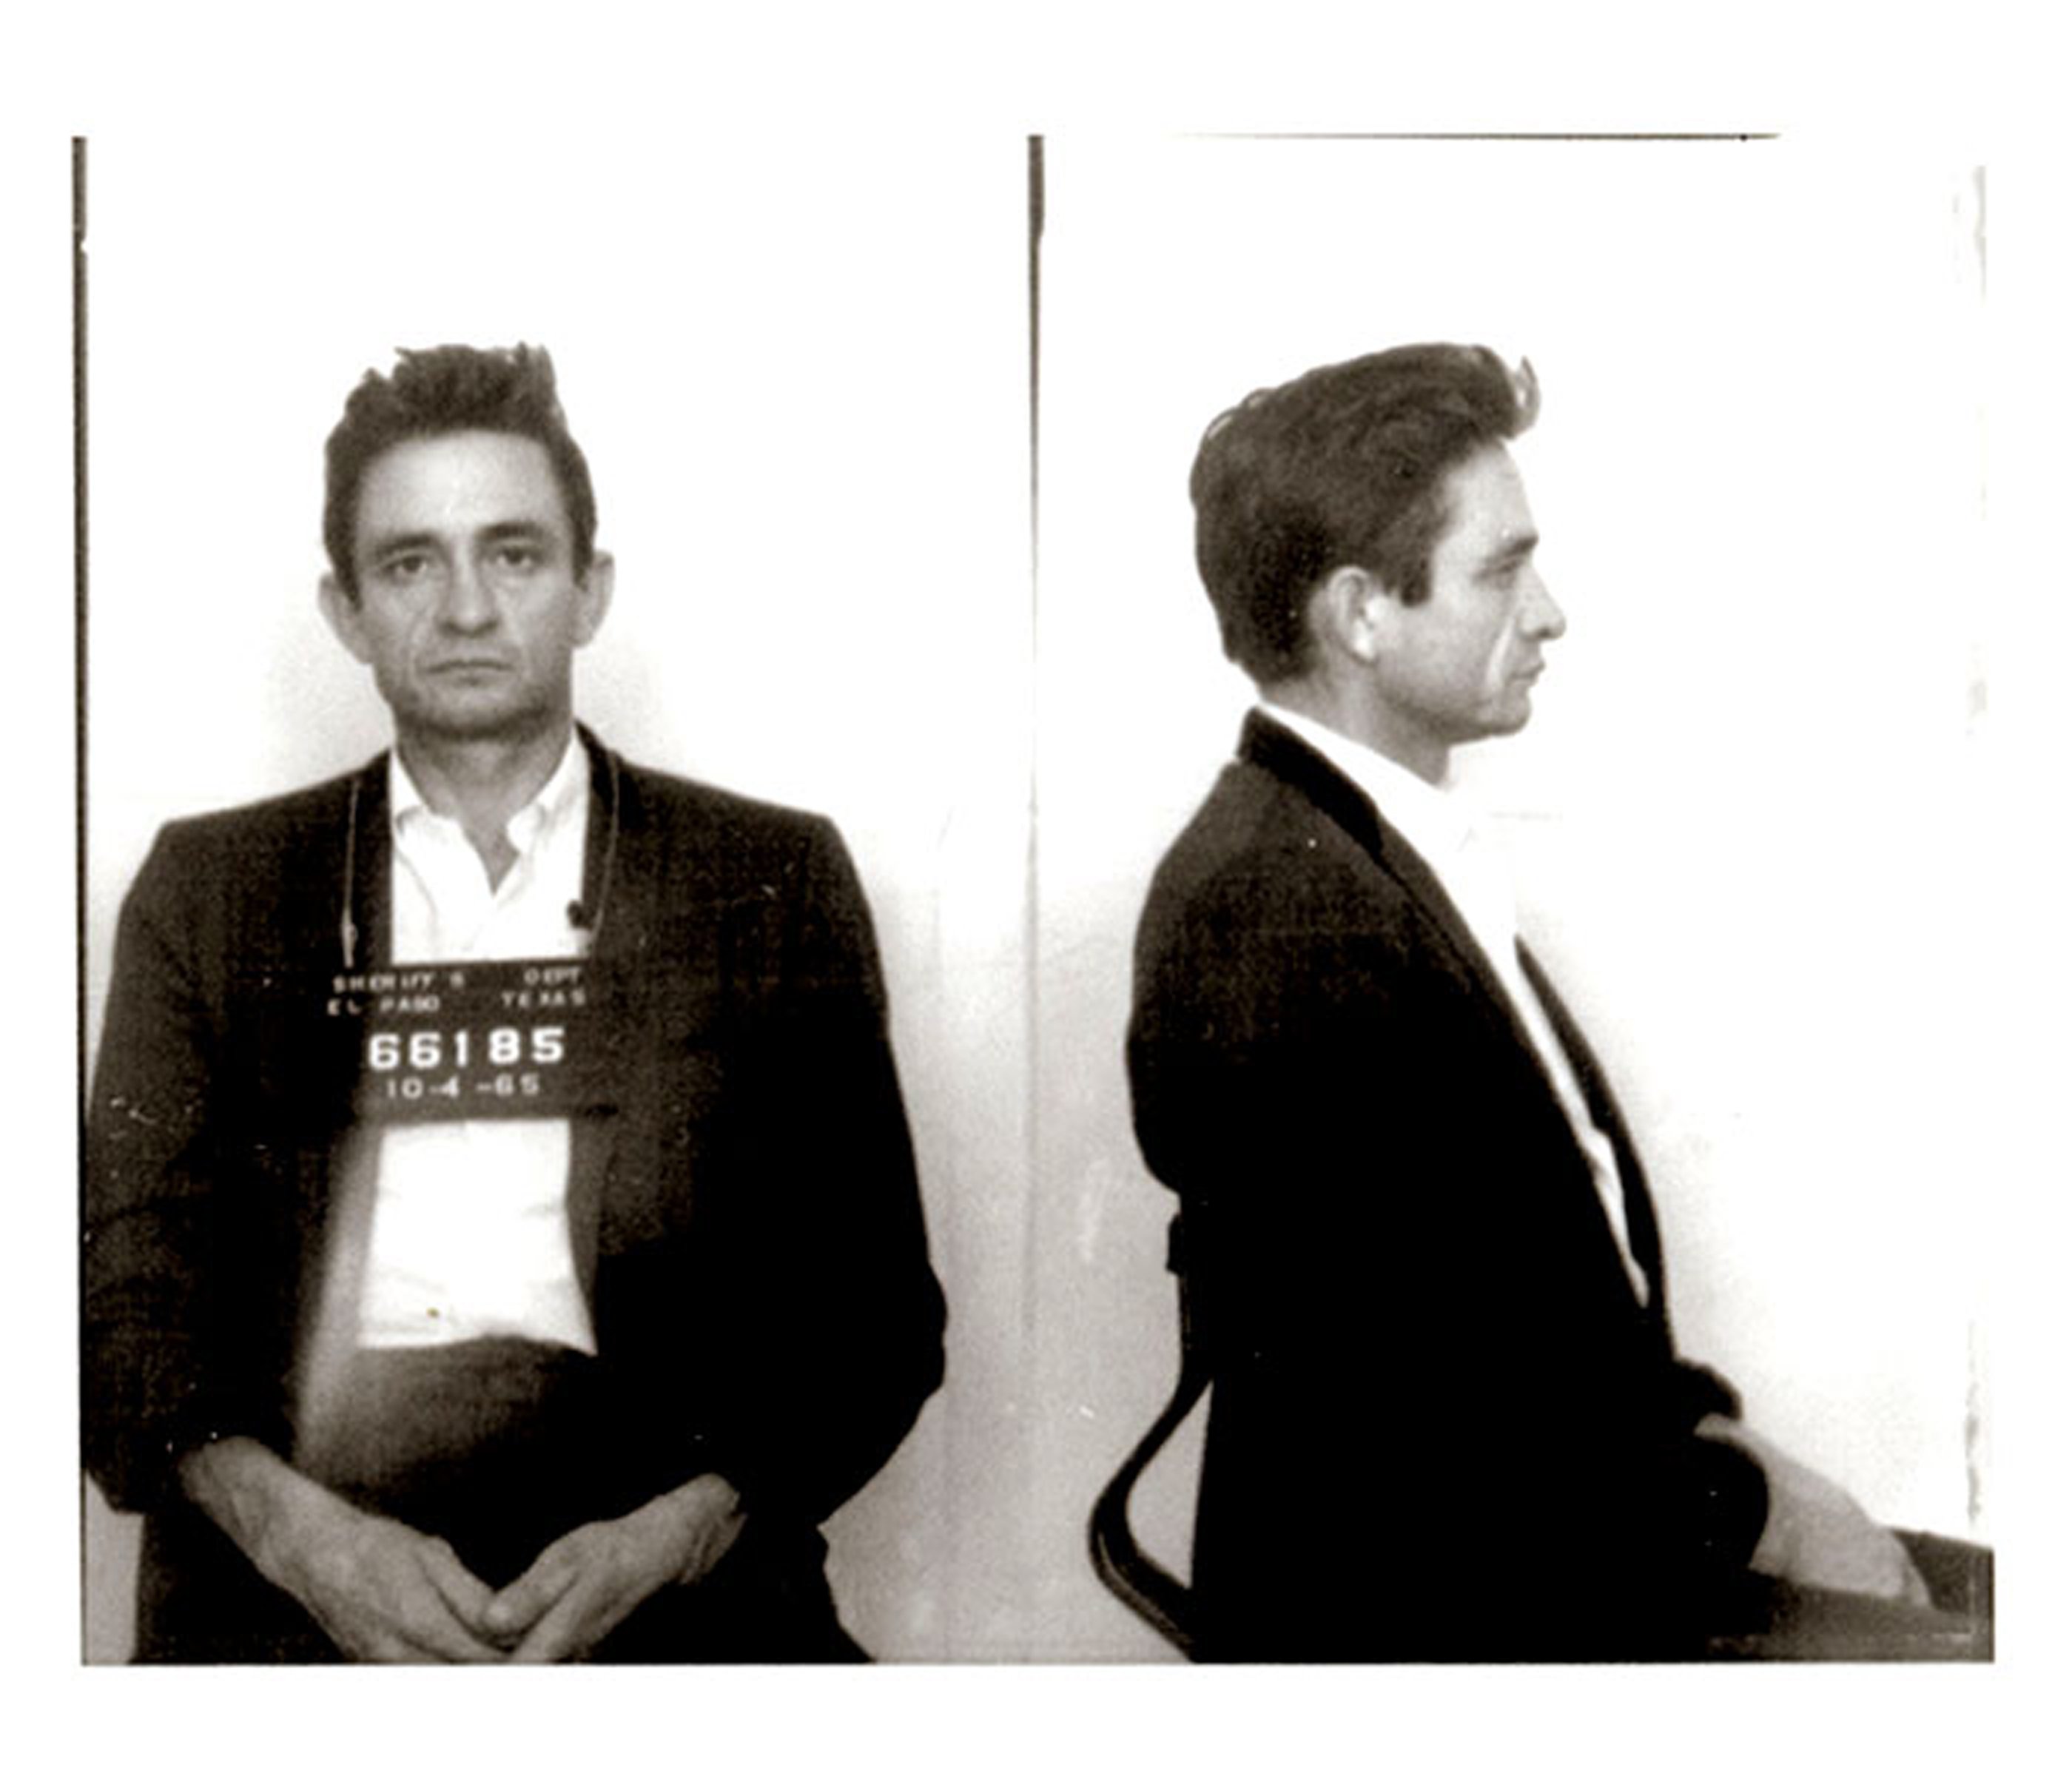 Johnny Cash poses for a mug shot after his 1965 arrest.